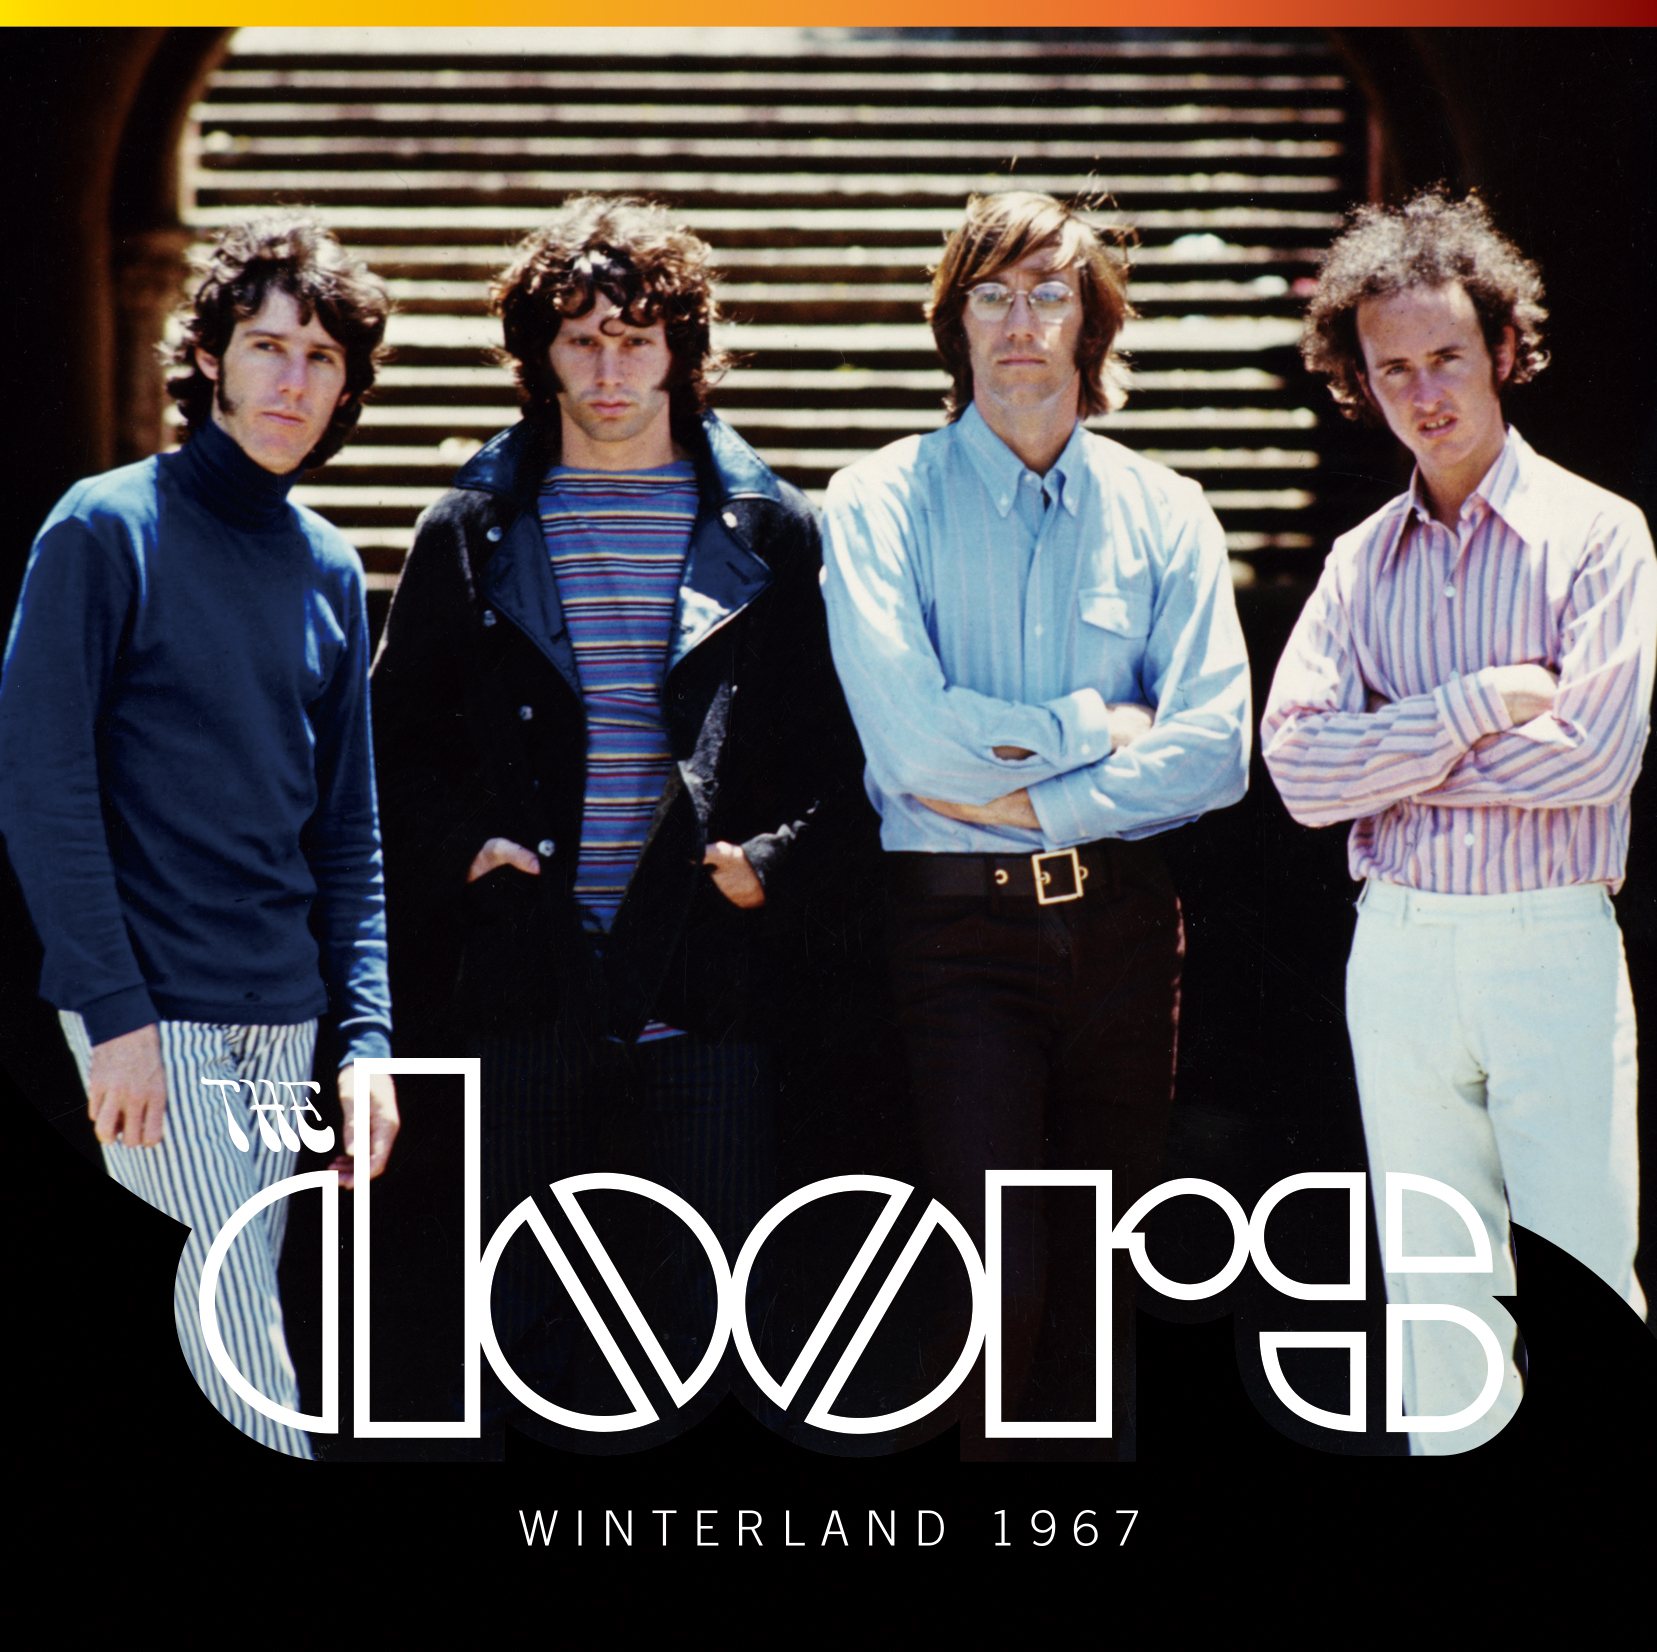 THE DOORS / WINTERLAND 1967